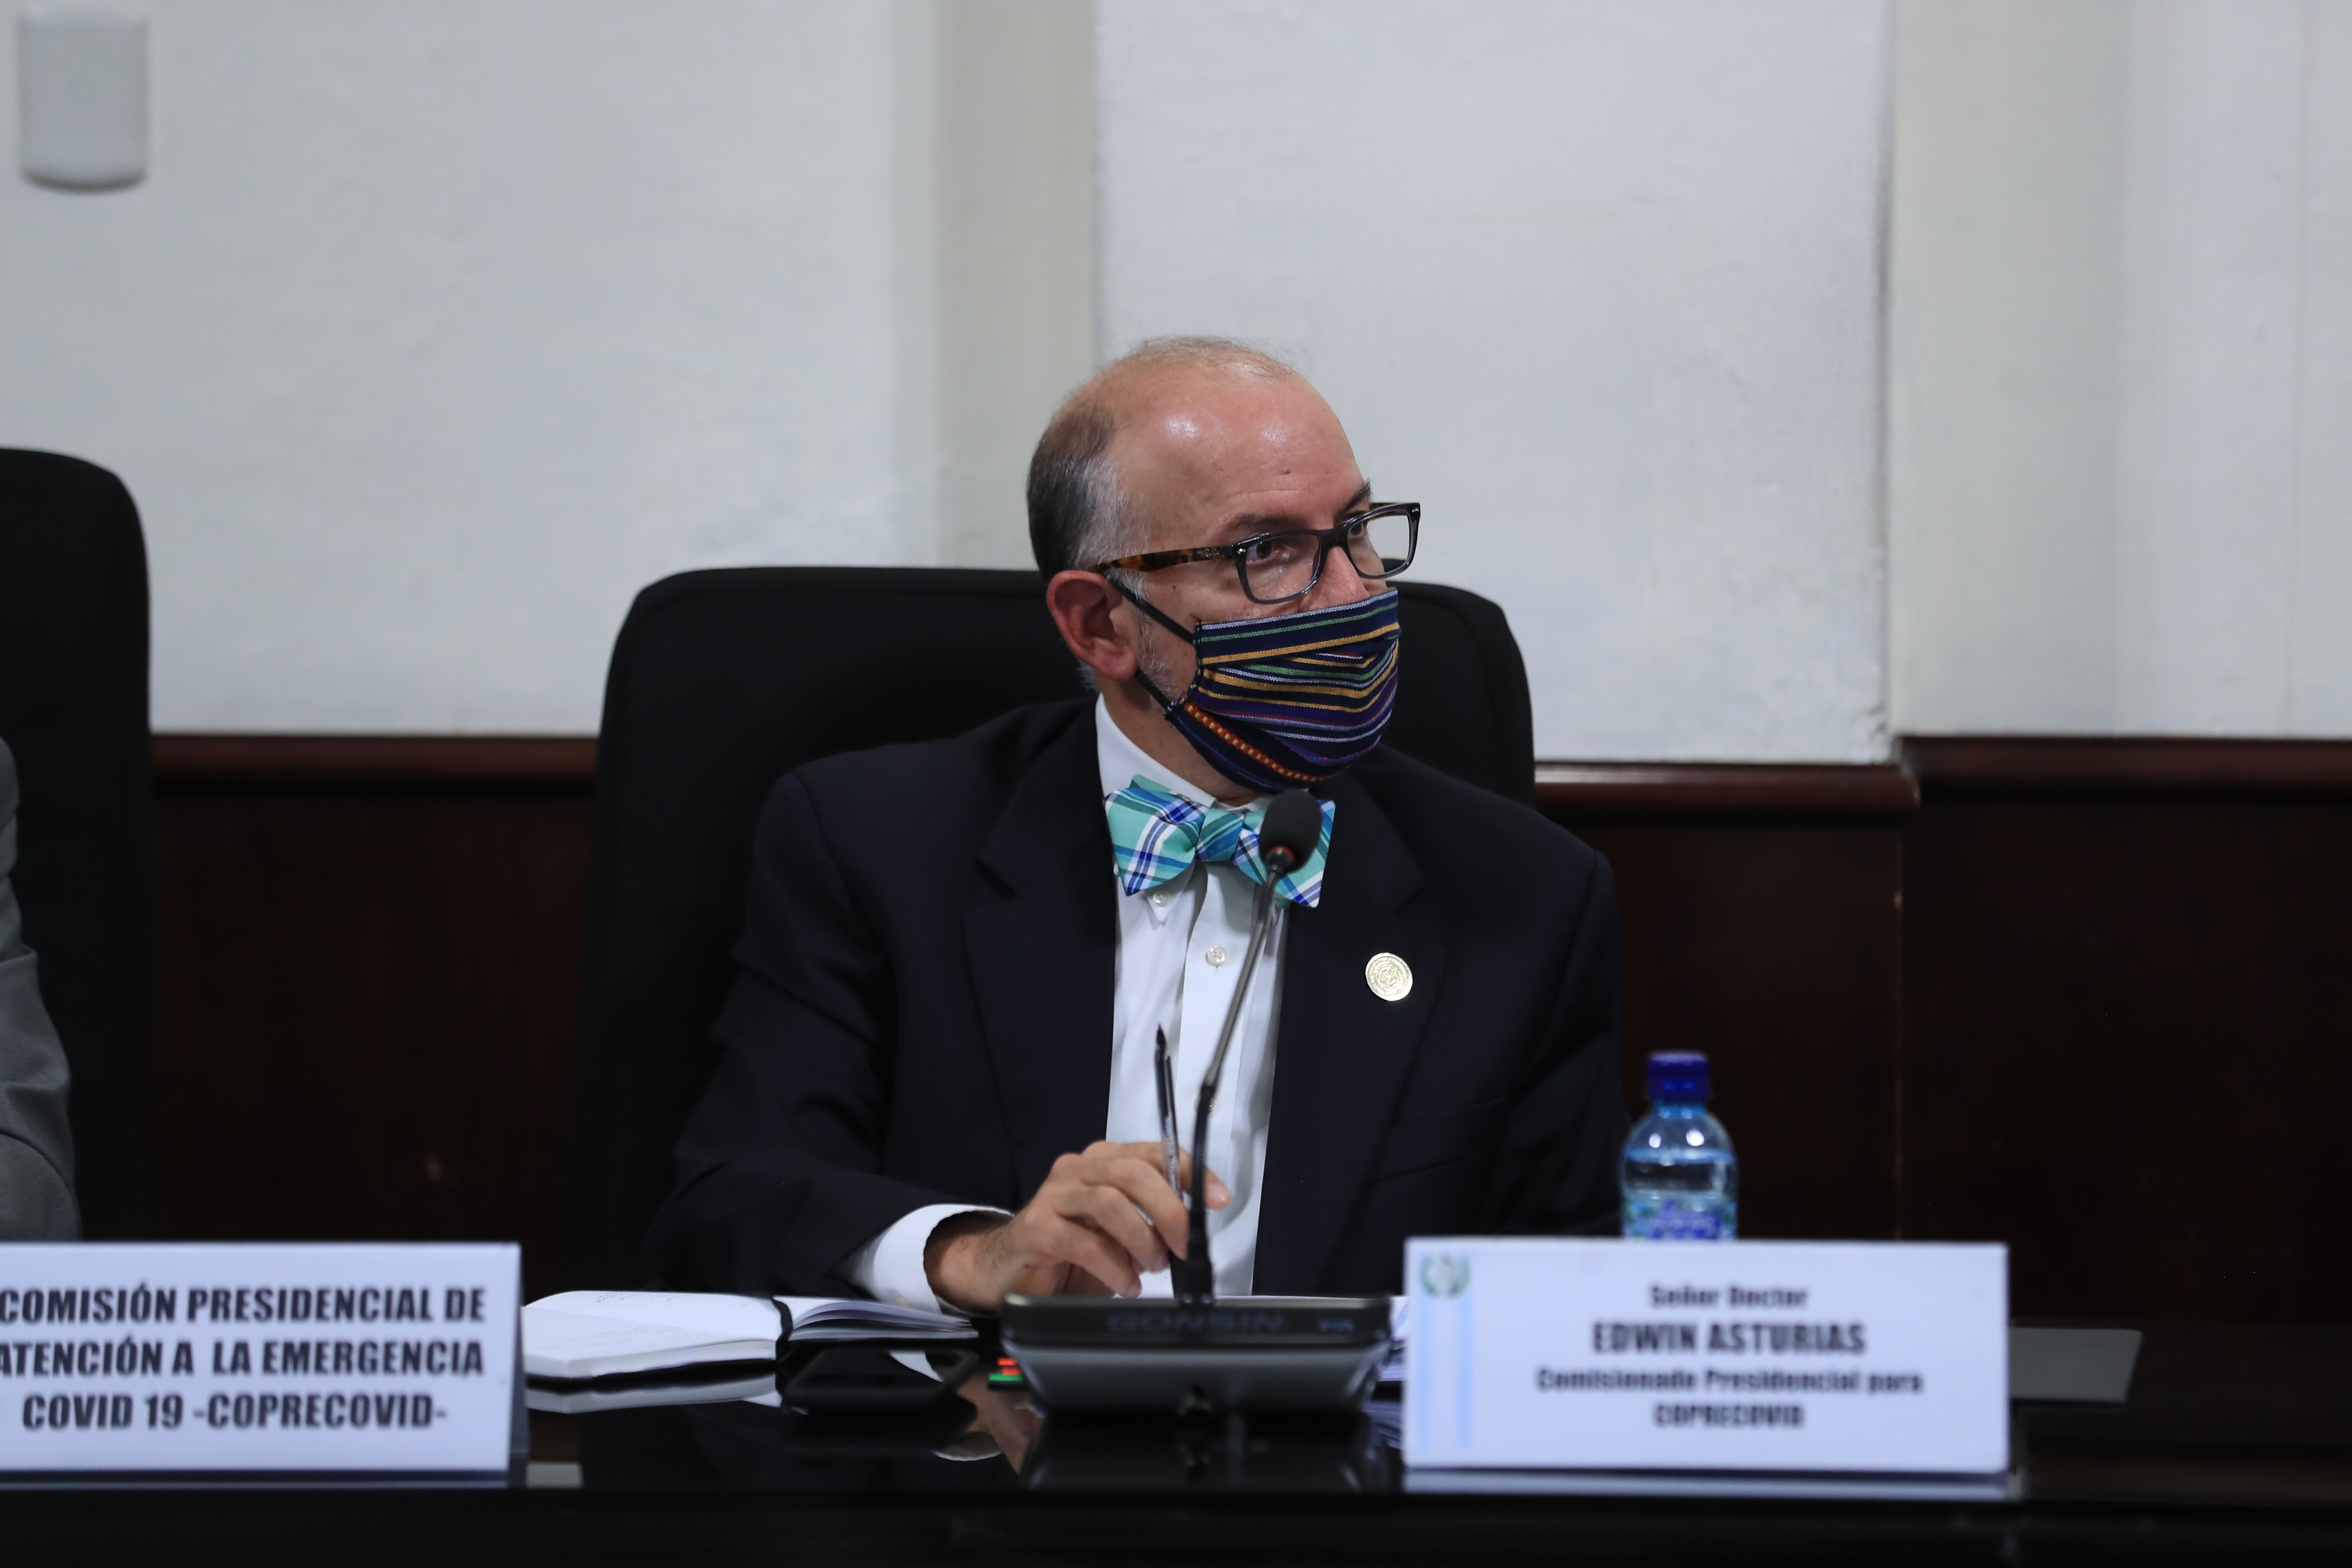 El doctor Edwin Asturias, de Coprecovid, acudió a dos citas legislativas relacionadas a la adquisición de vacunas contra el coronavirus. Fotografía: Prensa Libre (Juan Diego González). 